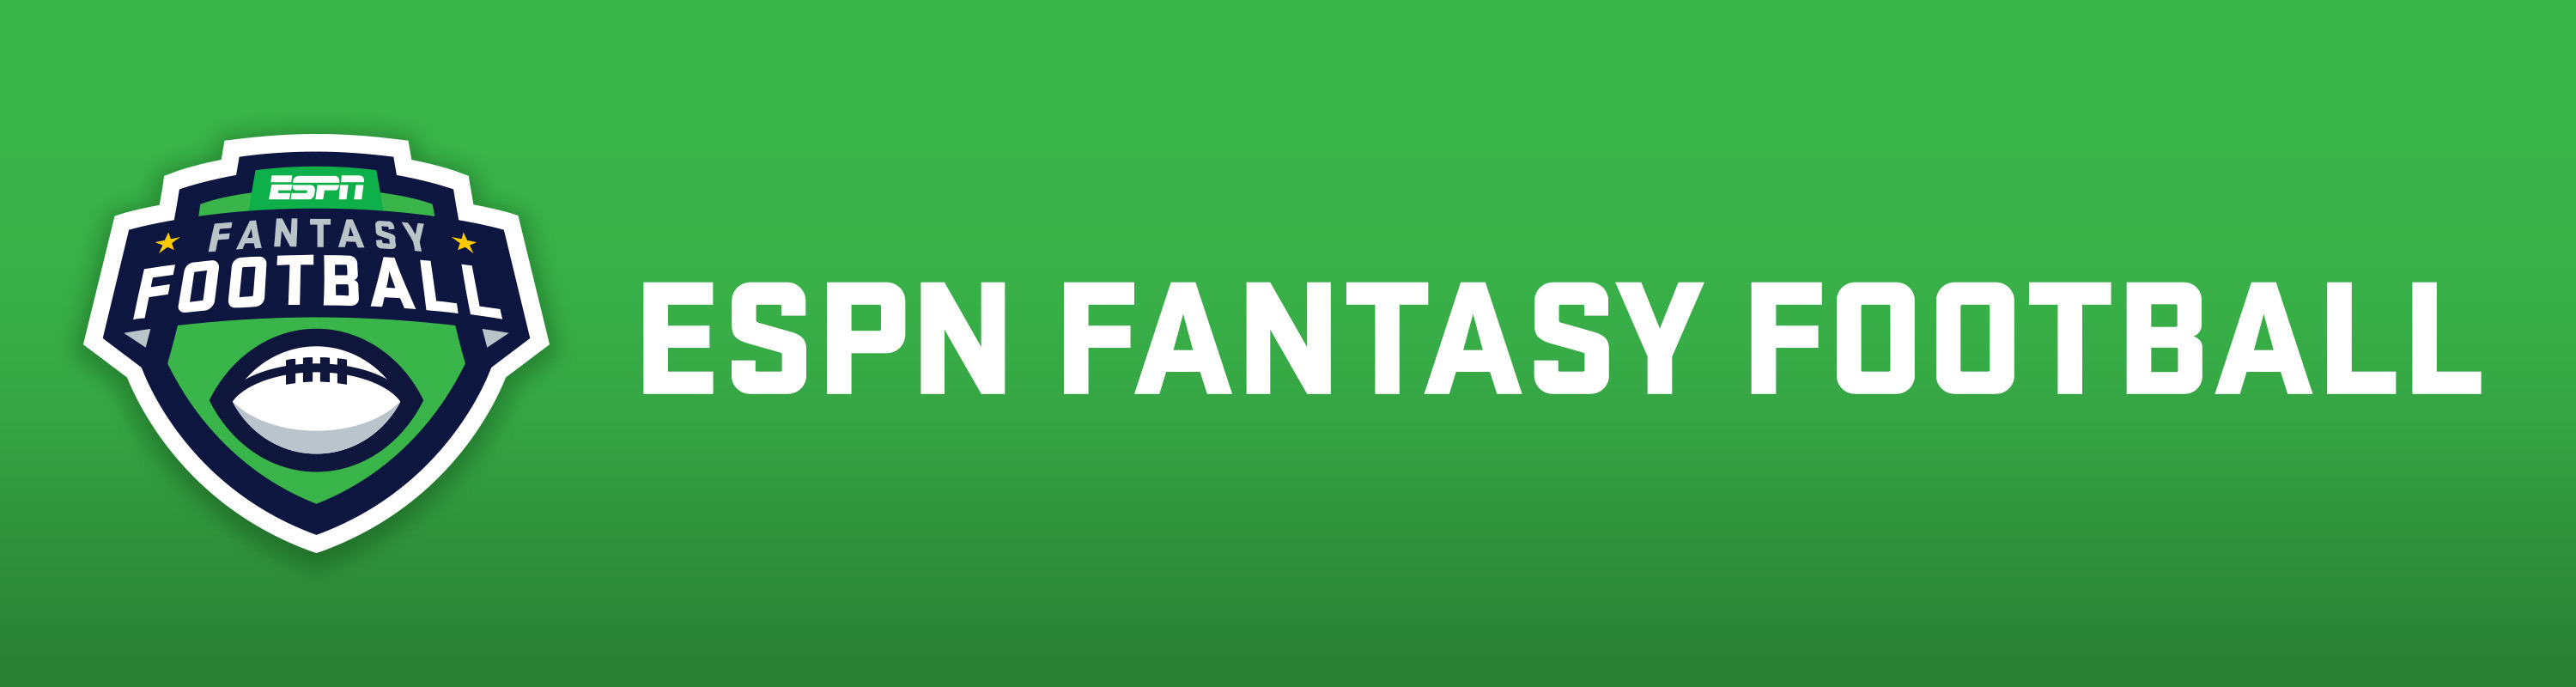 Espn Fantasy Football Logos